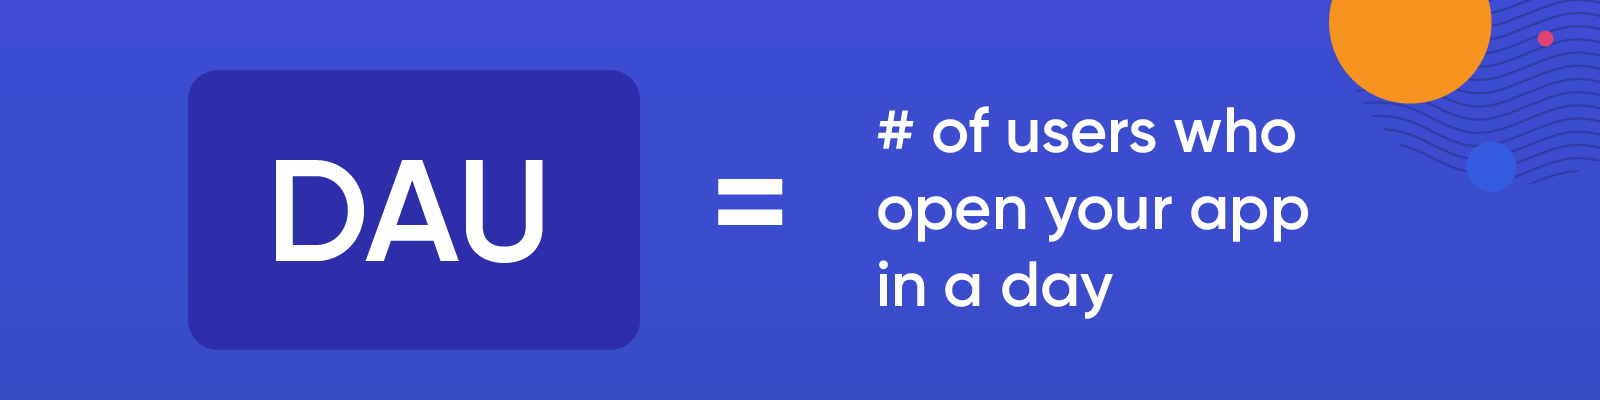 Co to są jednostki DAU? Liczba użytkowników, którzy otwierają Twoją aplikację w ciągu dnia.